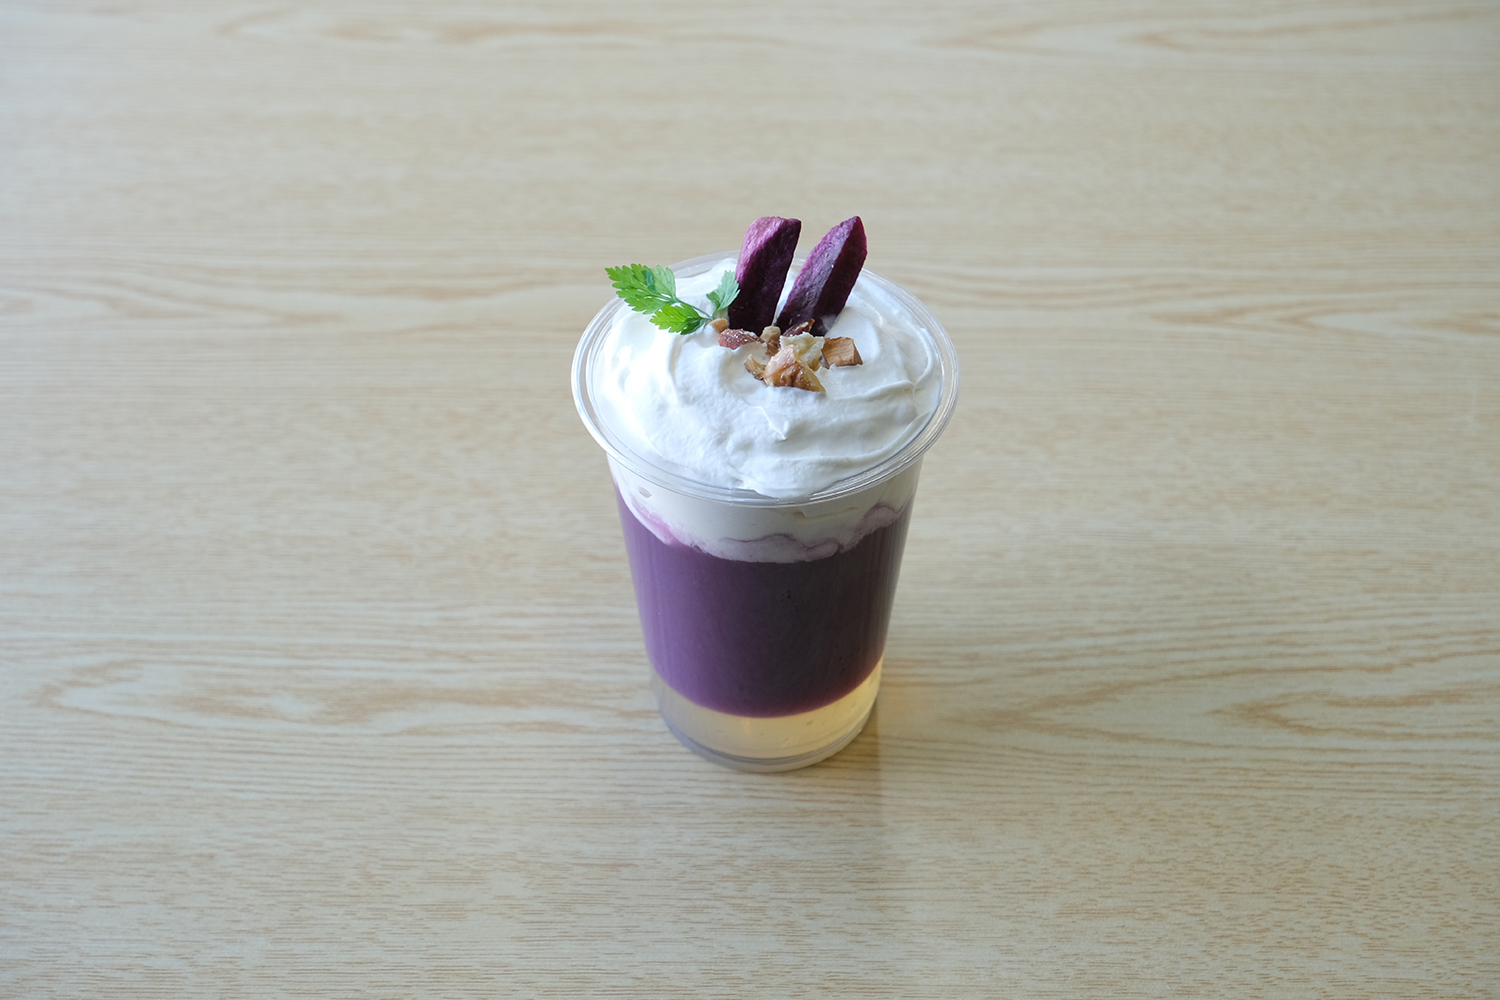 【すりながし】紫芋・だしジュレ・アロエ・豆乳エスプーマ・ナッツ・紫芋チップス・イタリアンパセリ